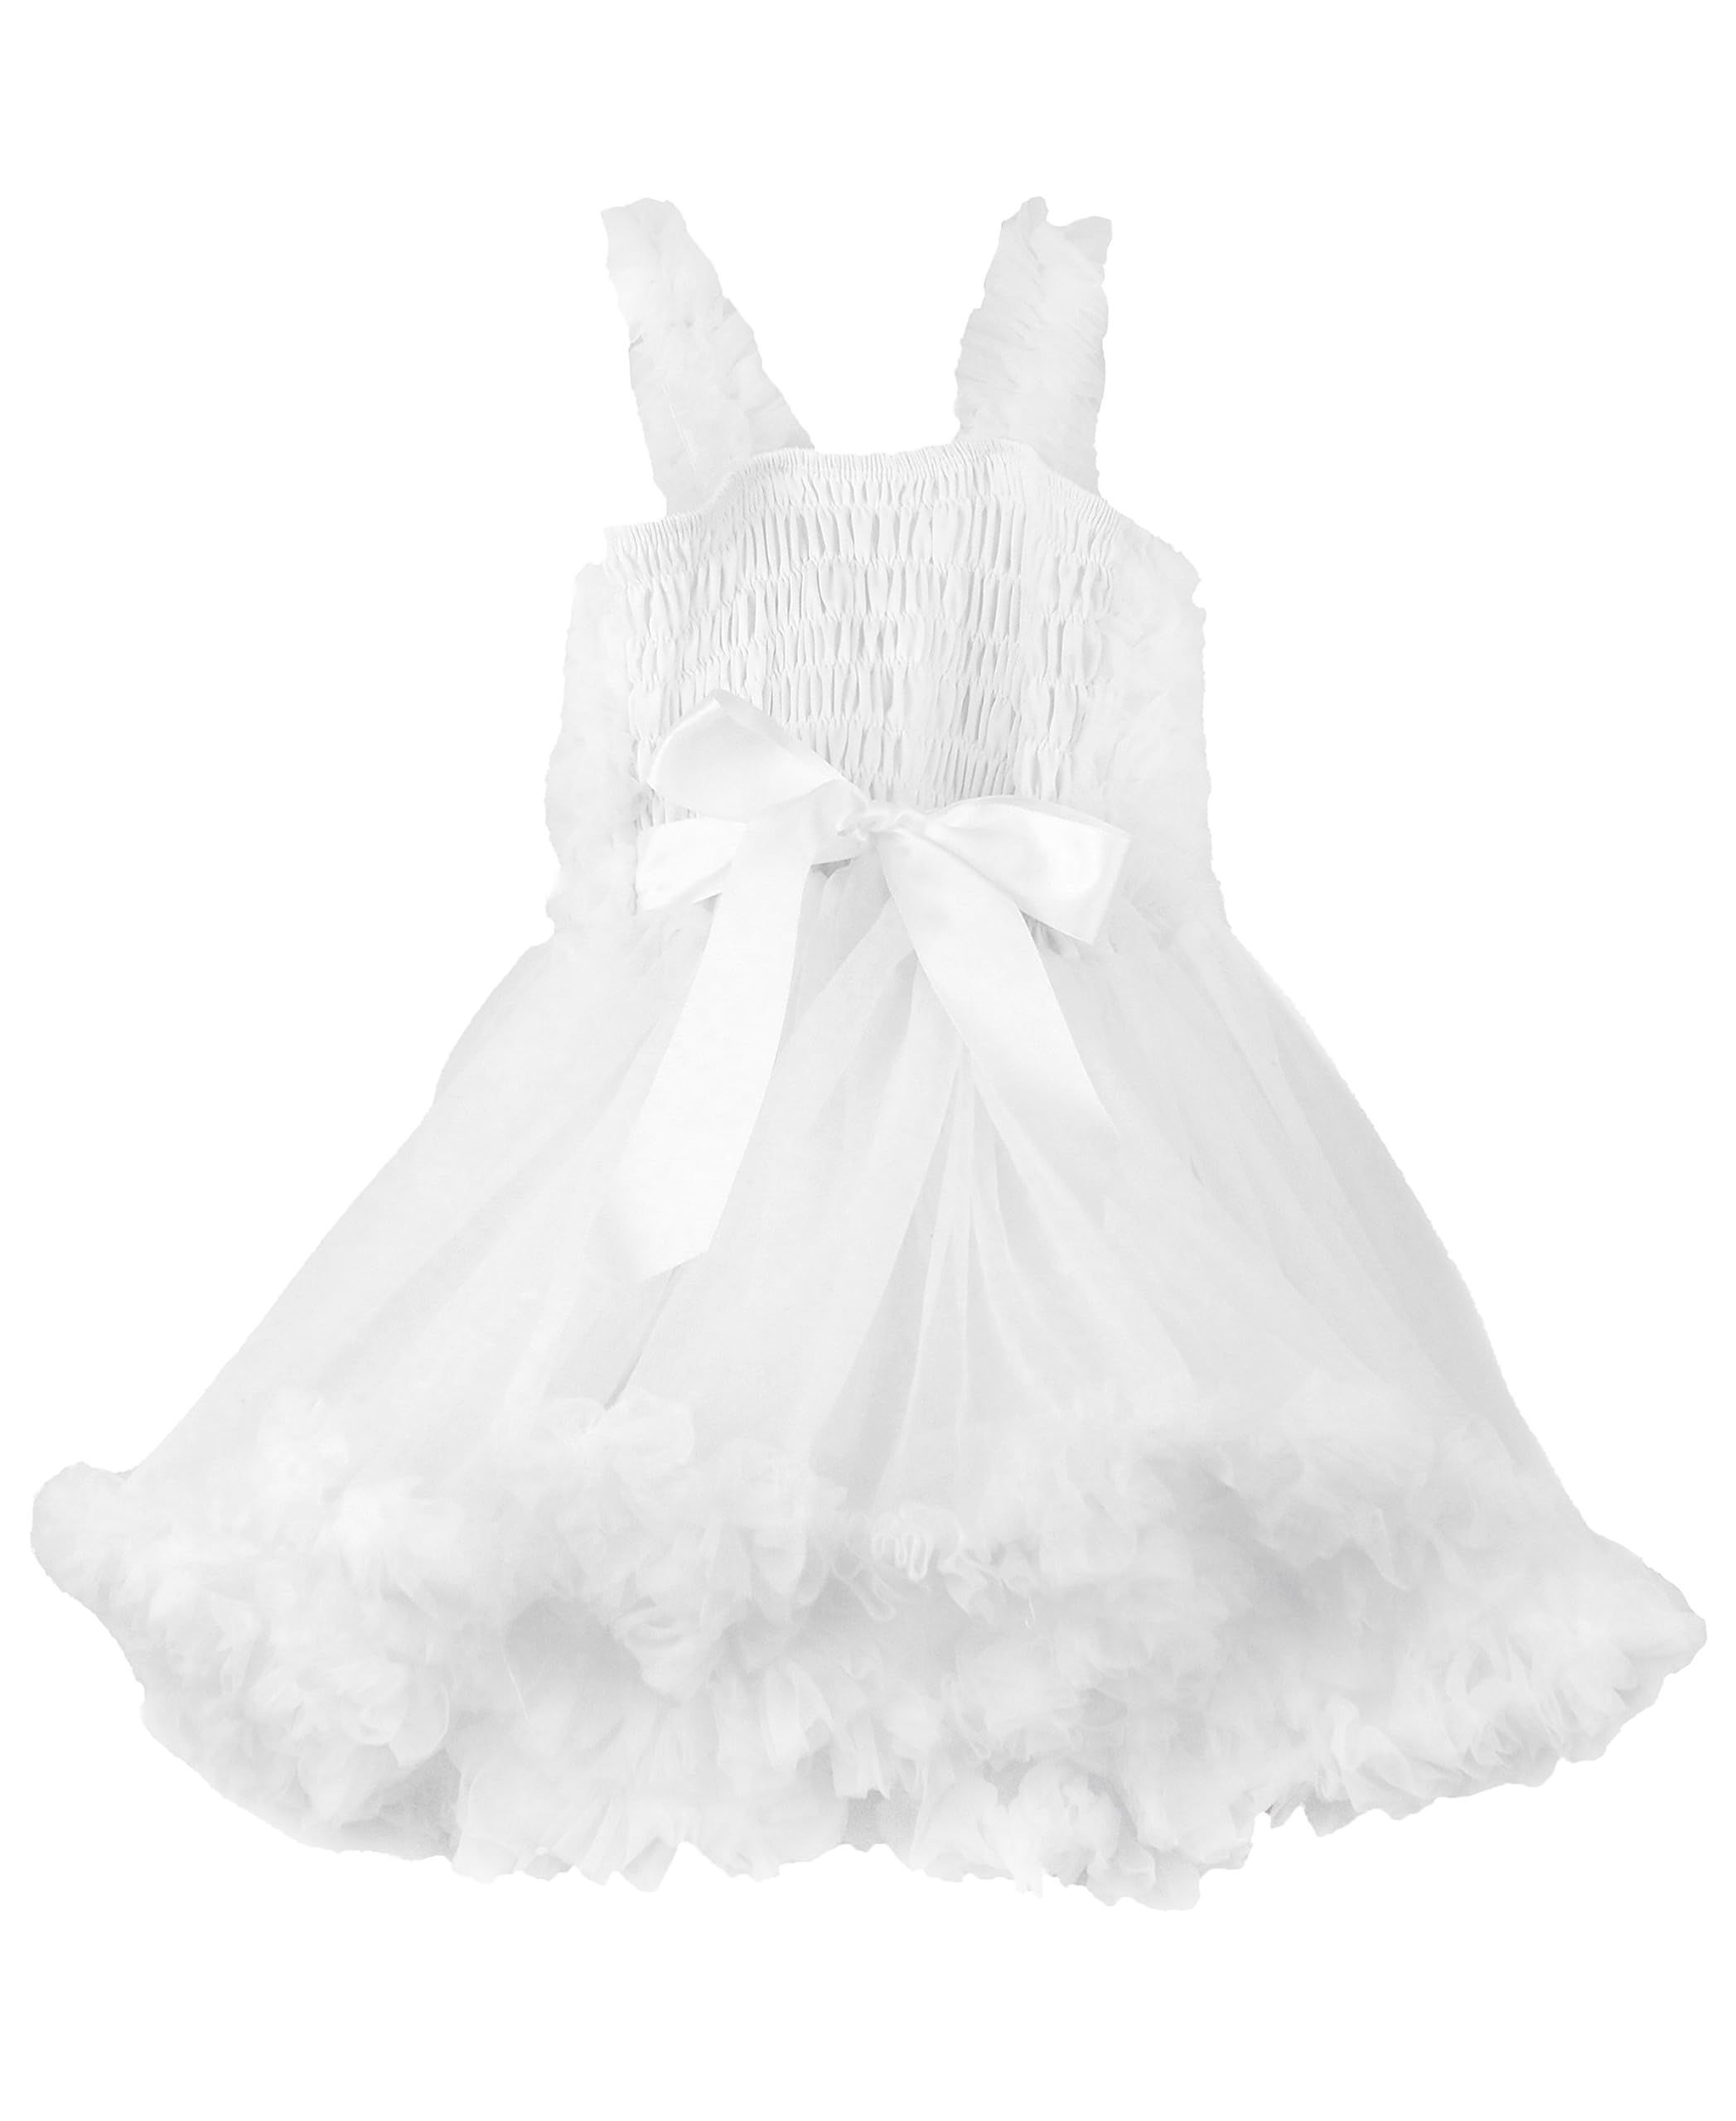 RuffleButts Princess Petti Dress for Girls